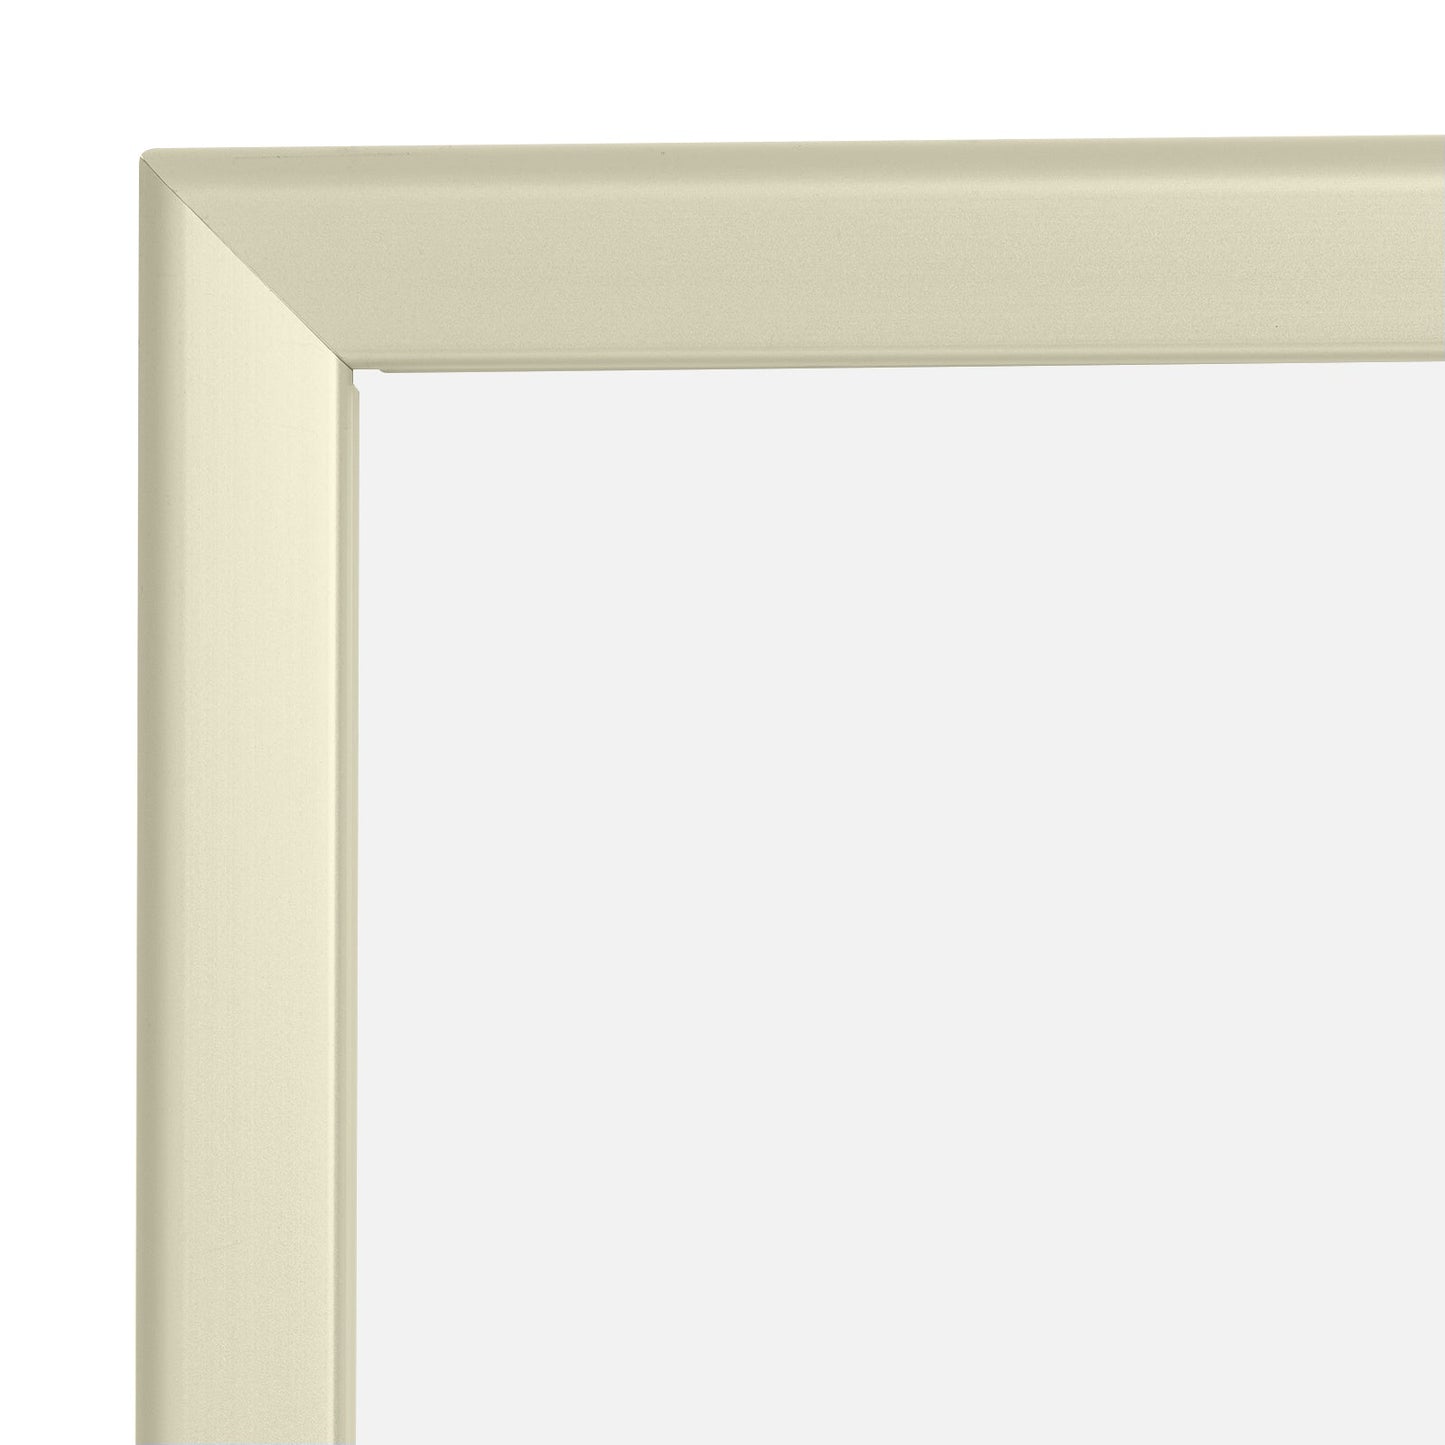 24x36 Cream SnapeZo® Snap Frame - 1.25" Profile